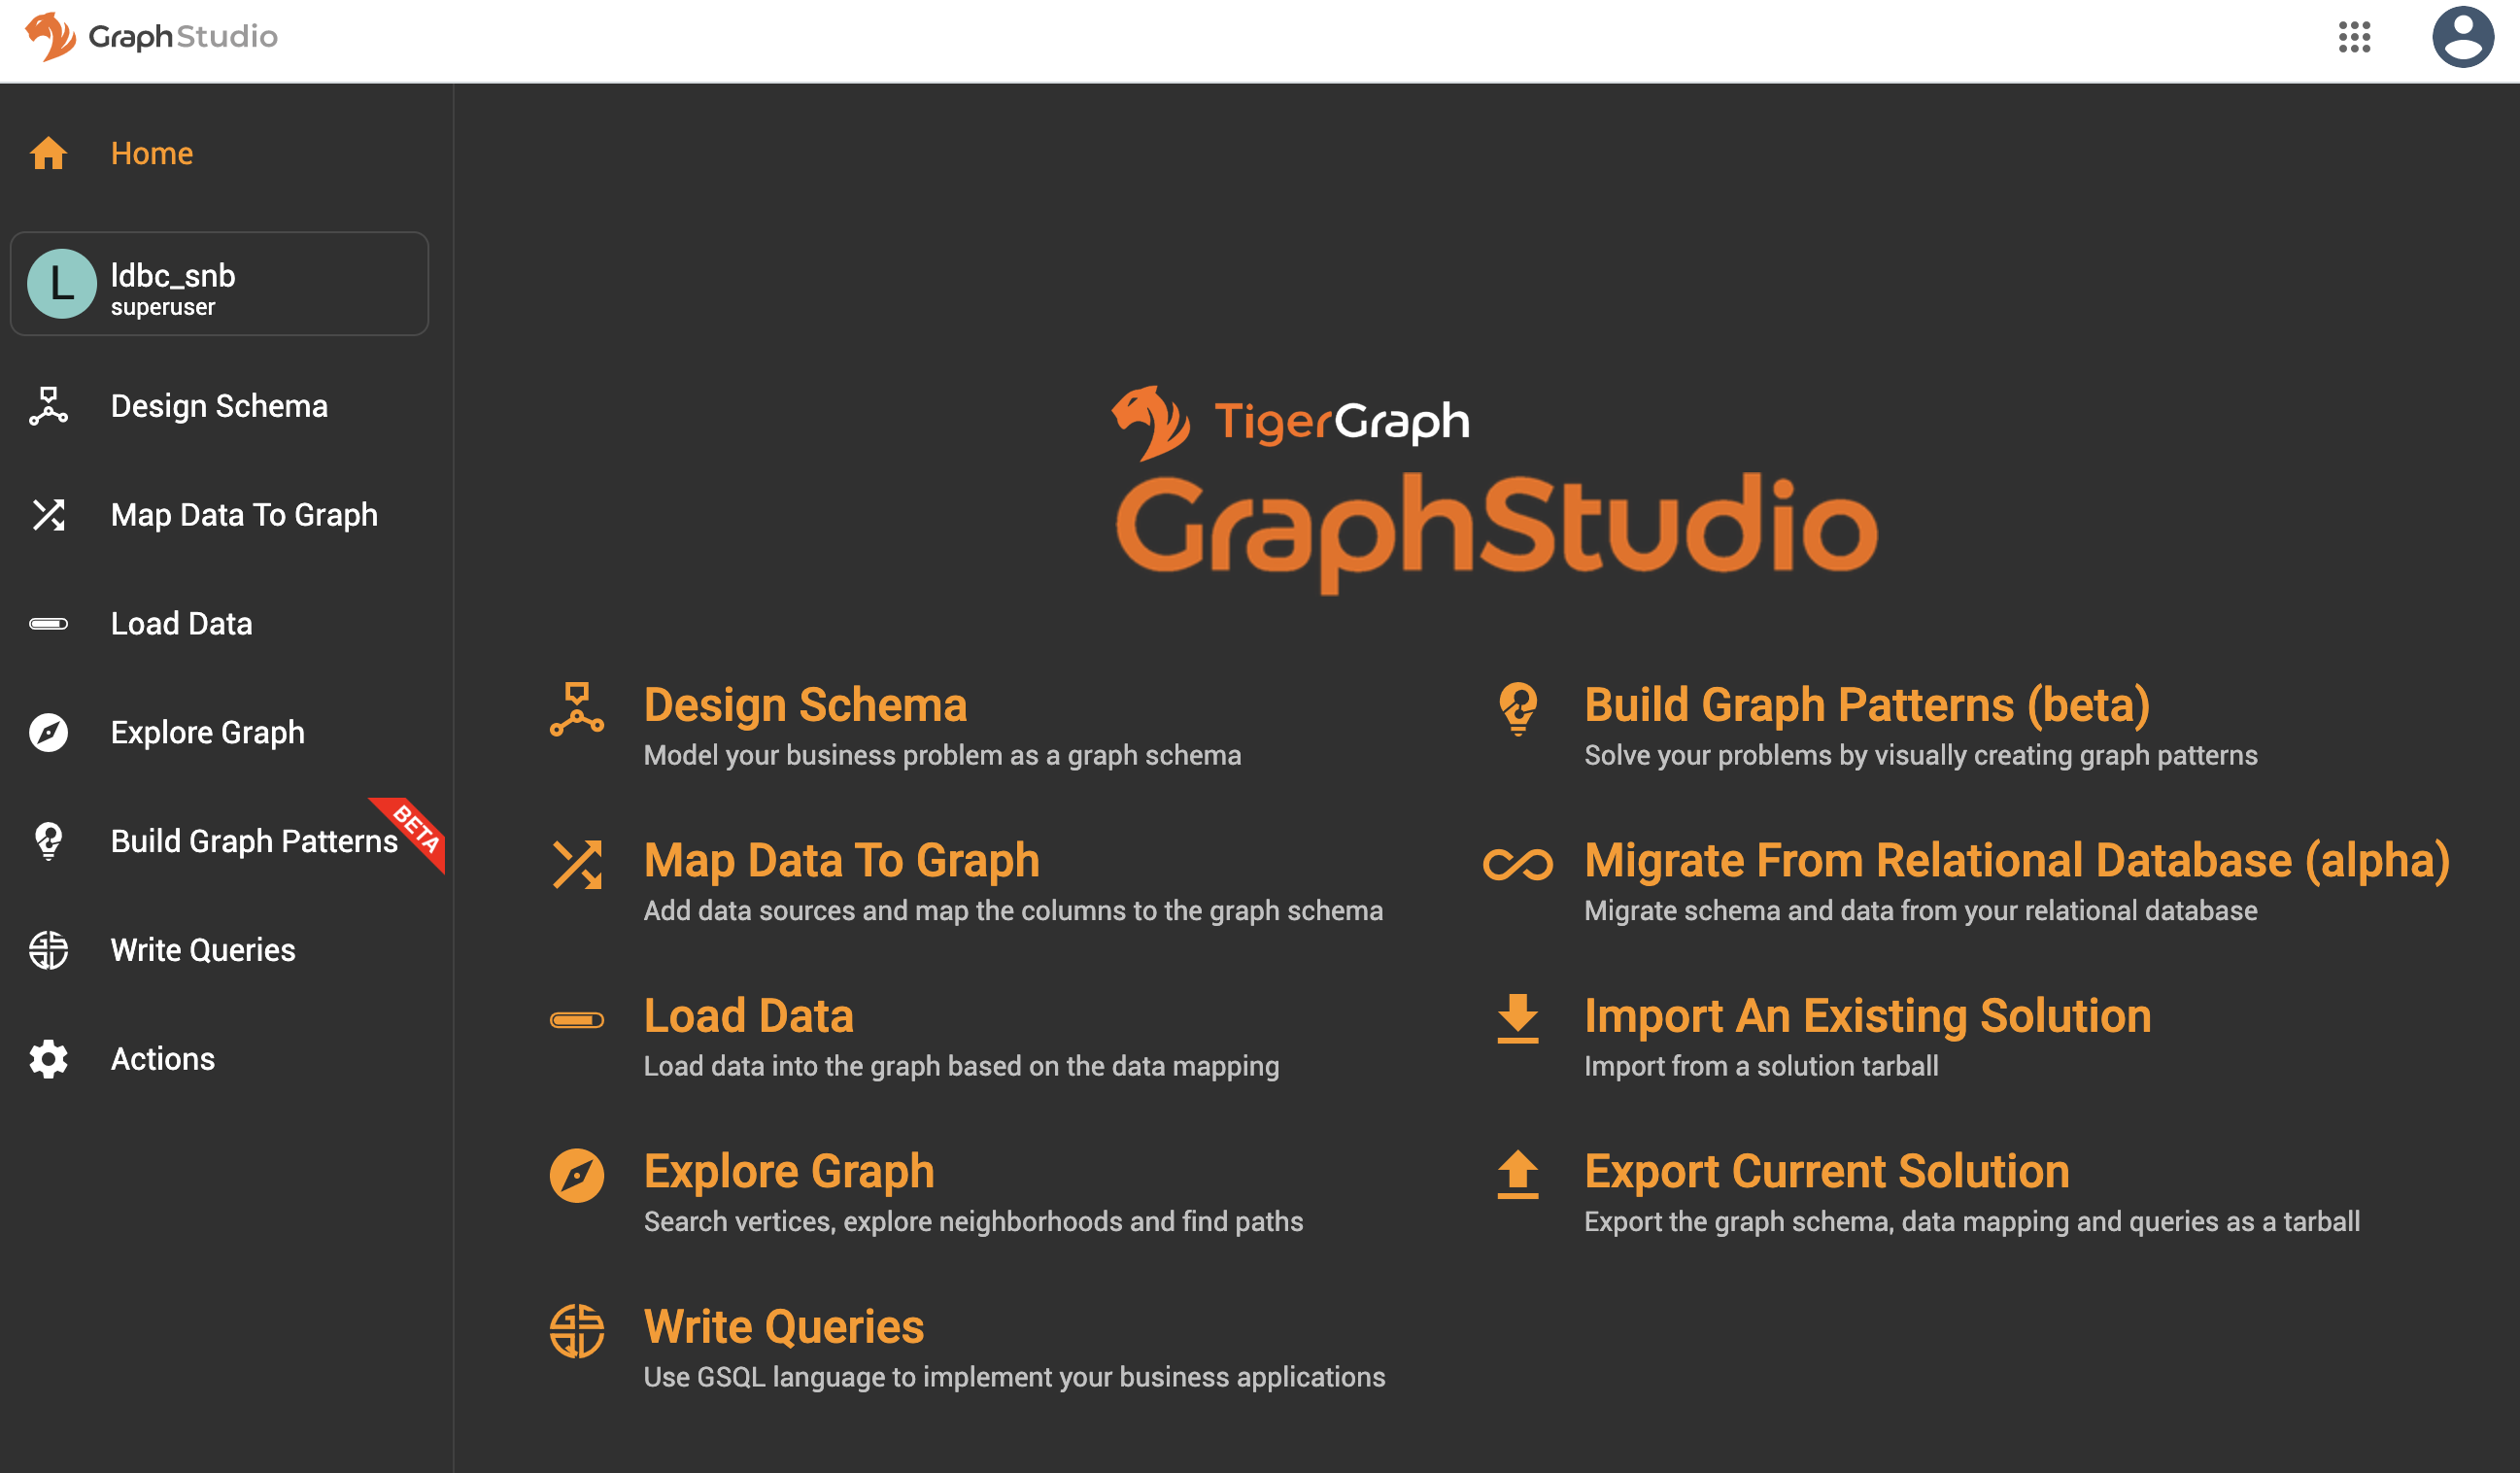 graphstudio main page